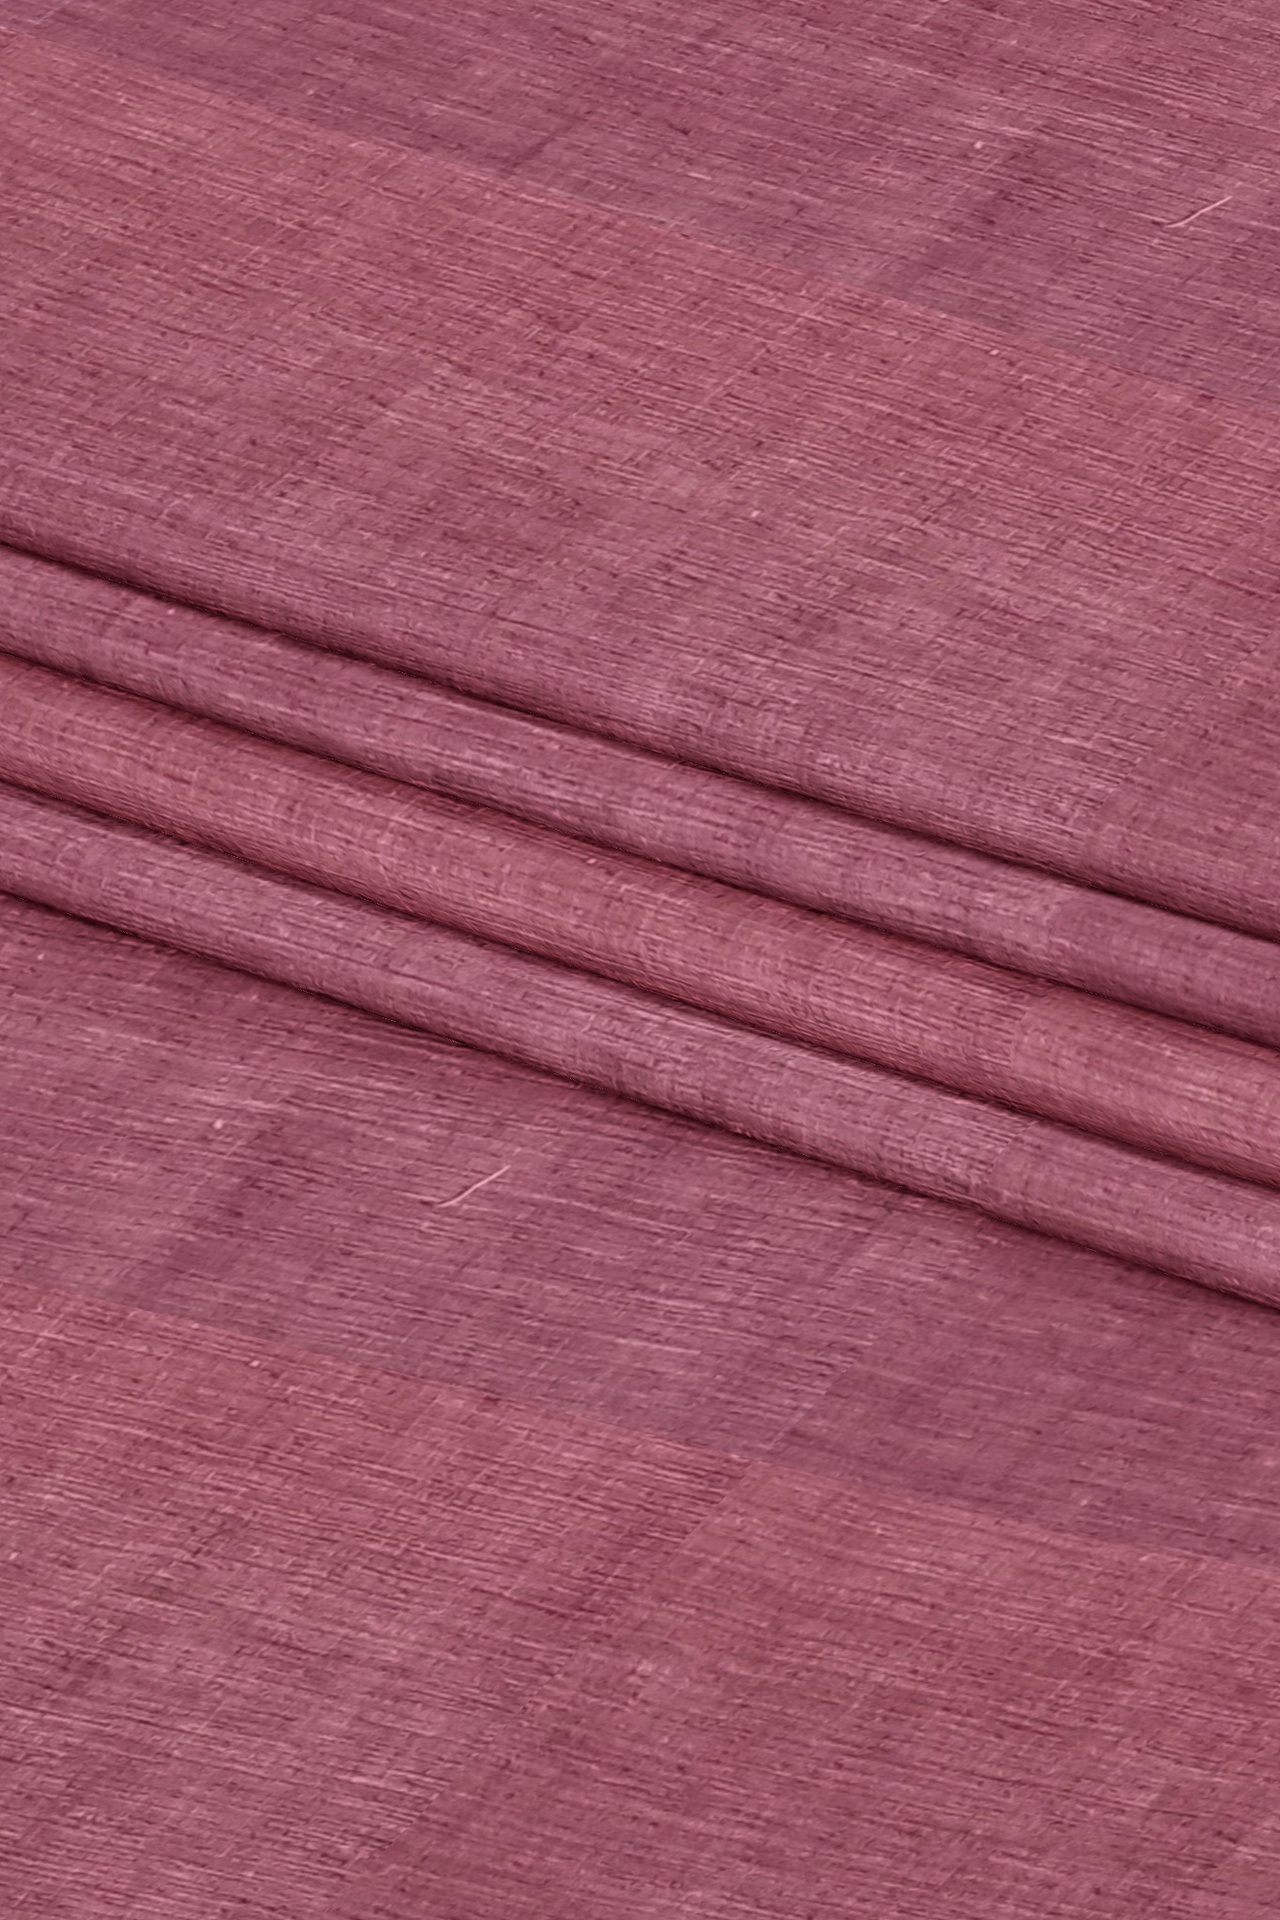 Punch Pink Handspun Handwoven Cotton Fabric